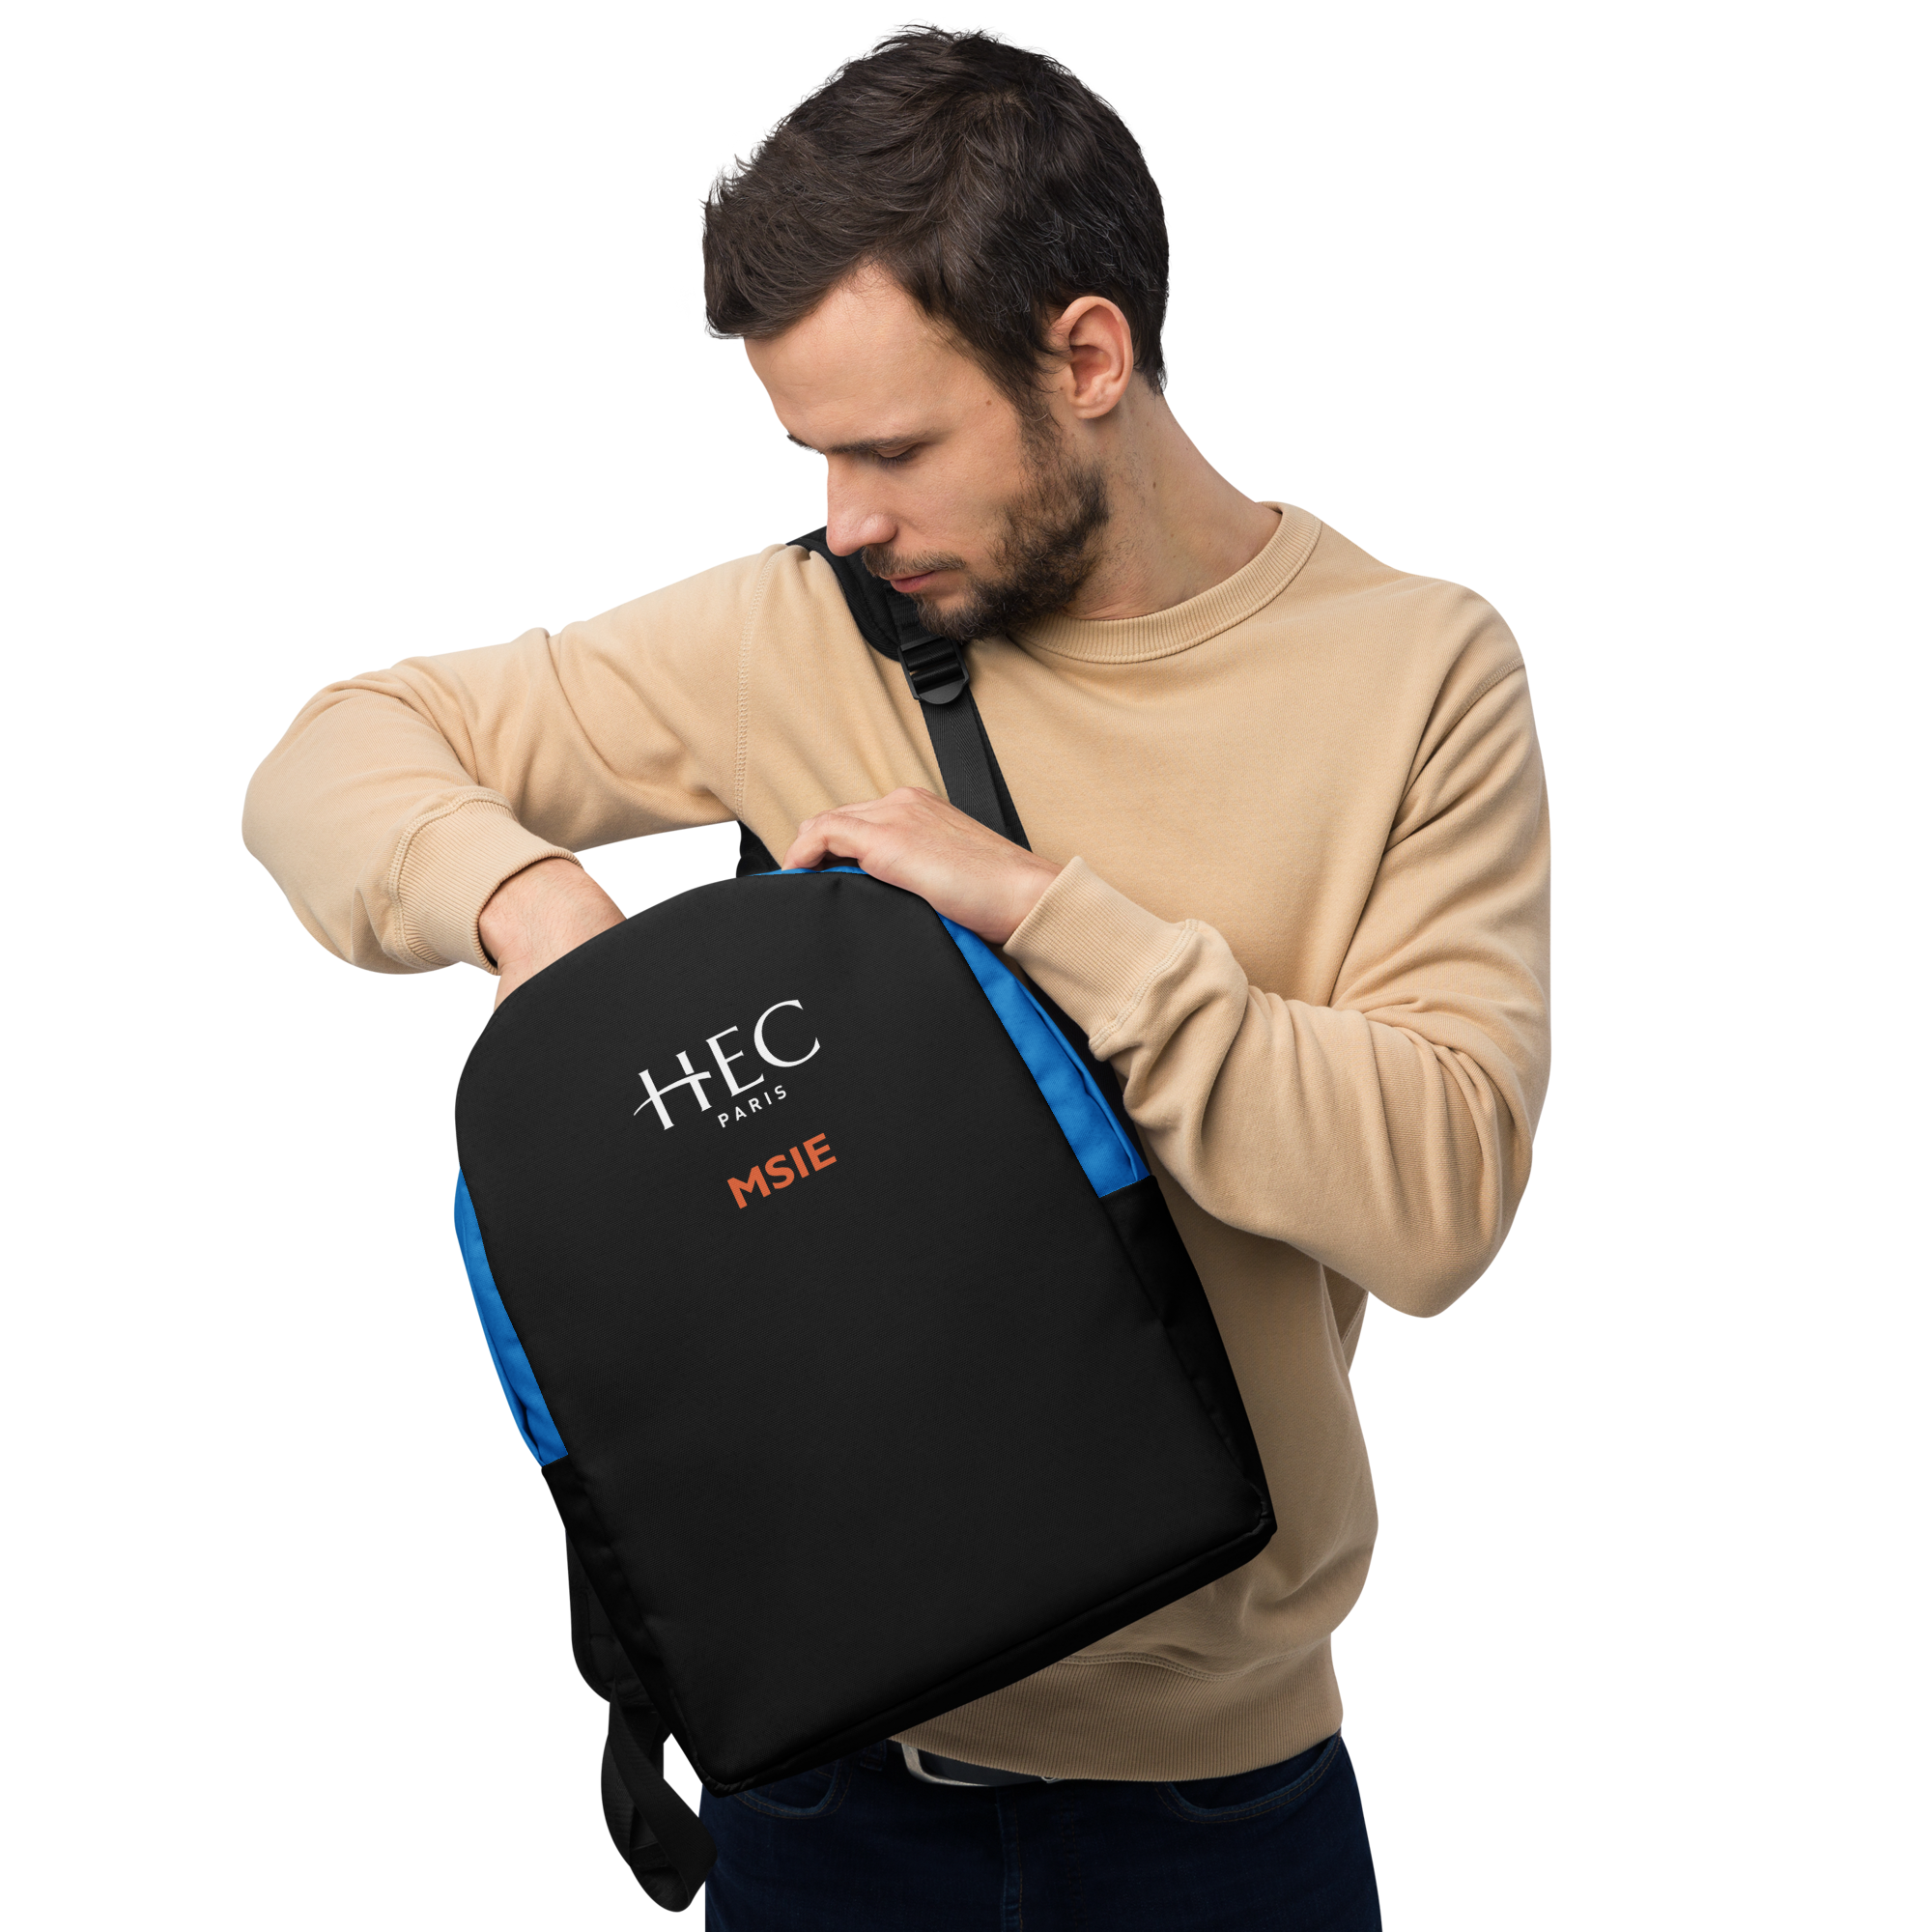 HEC Paris MSIE Minimalist Backpack